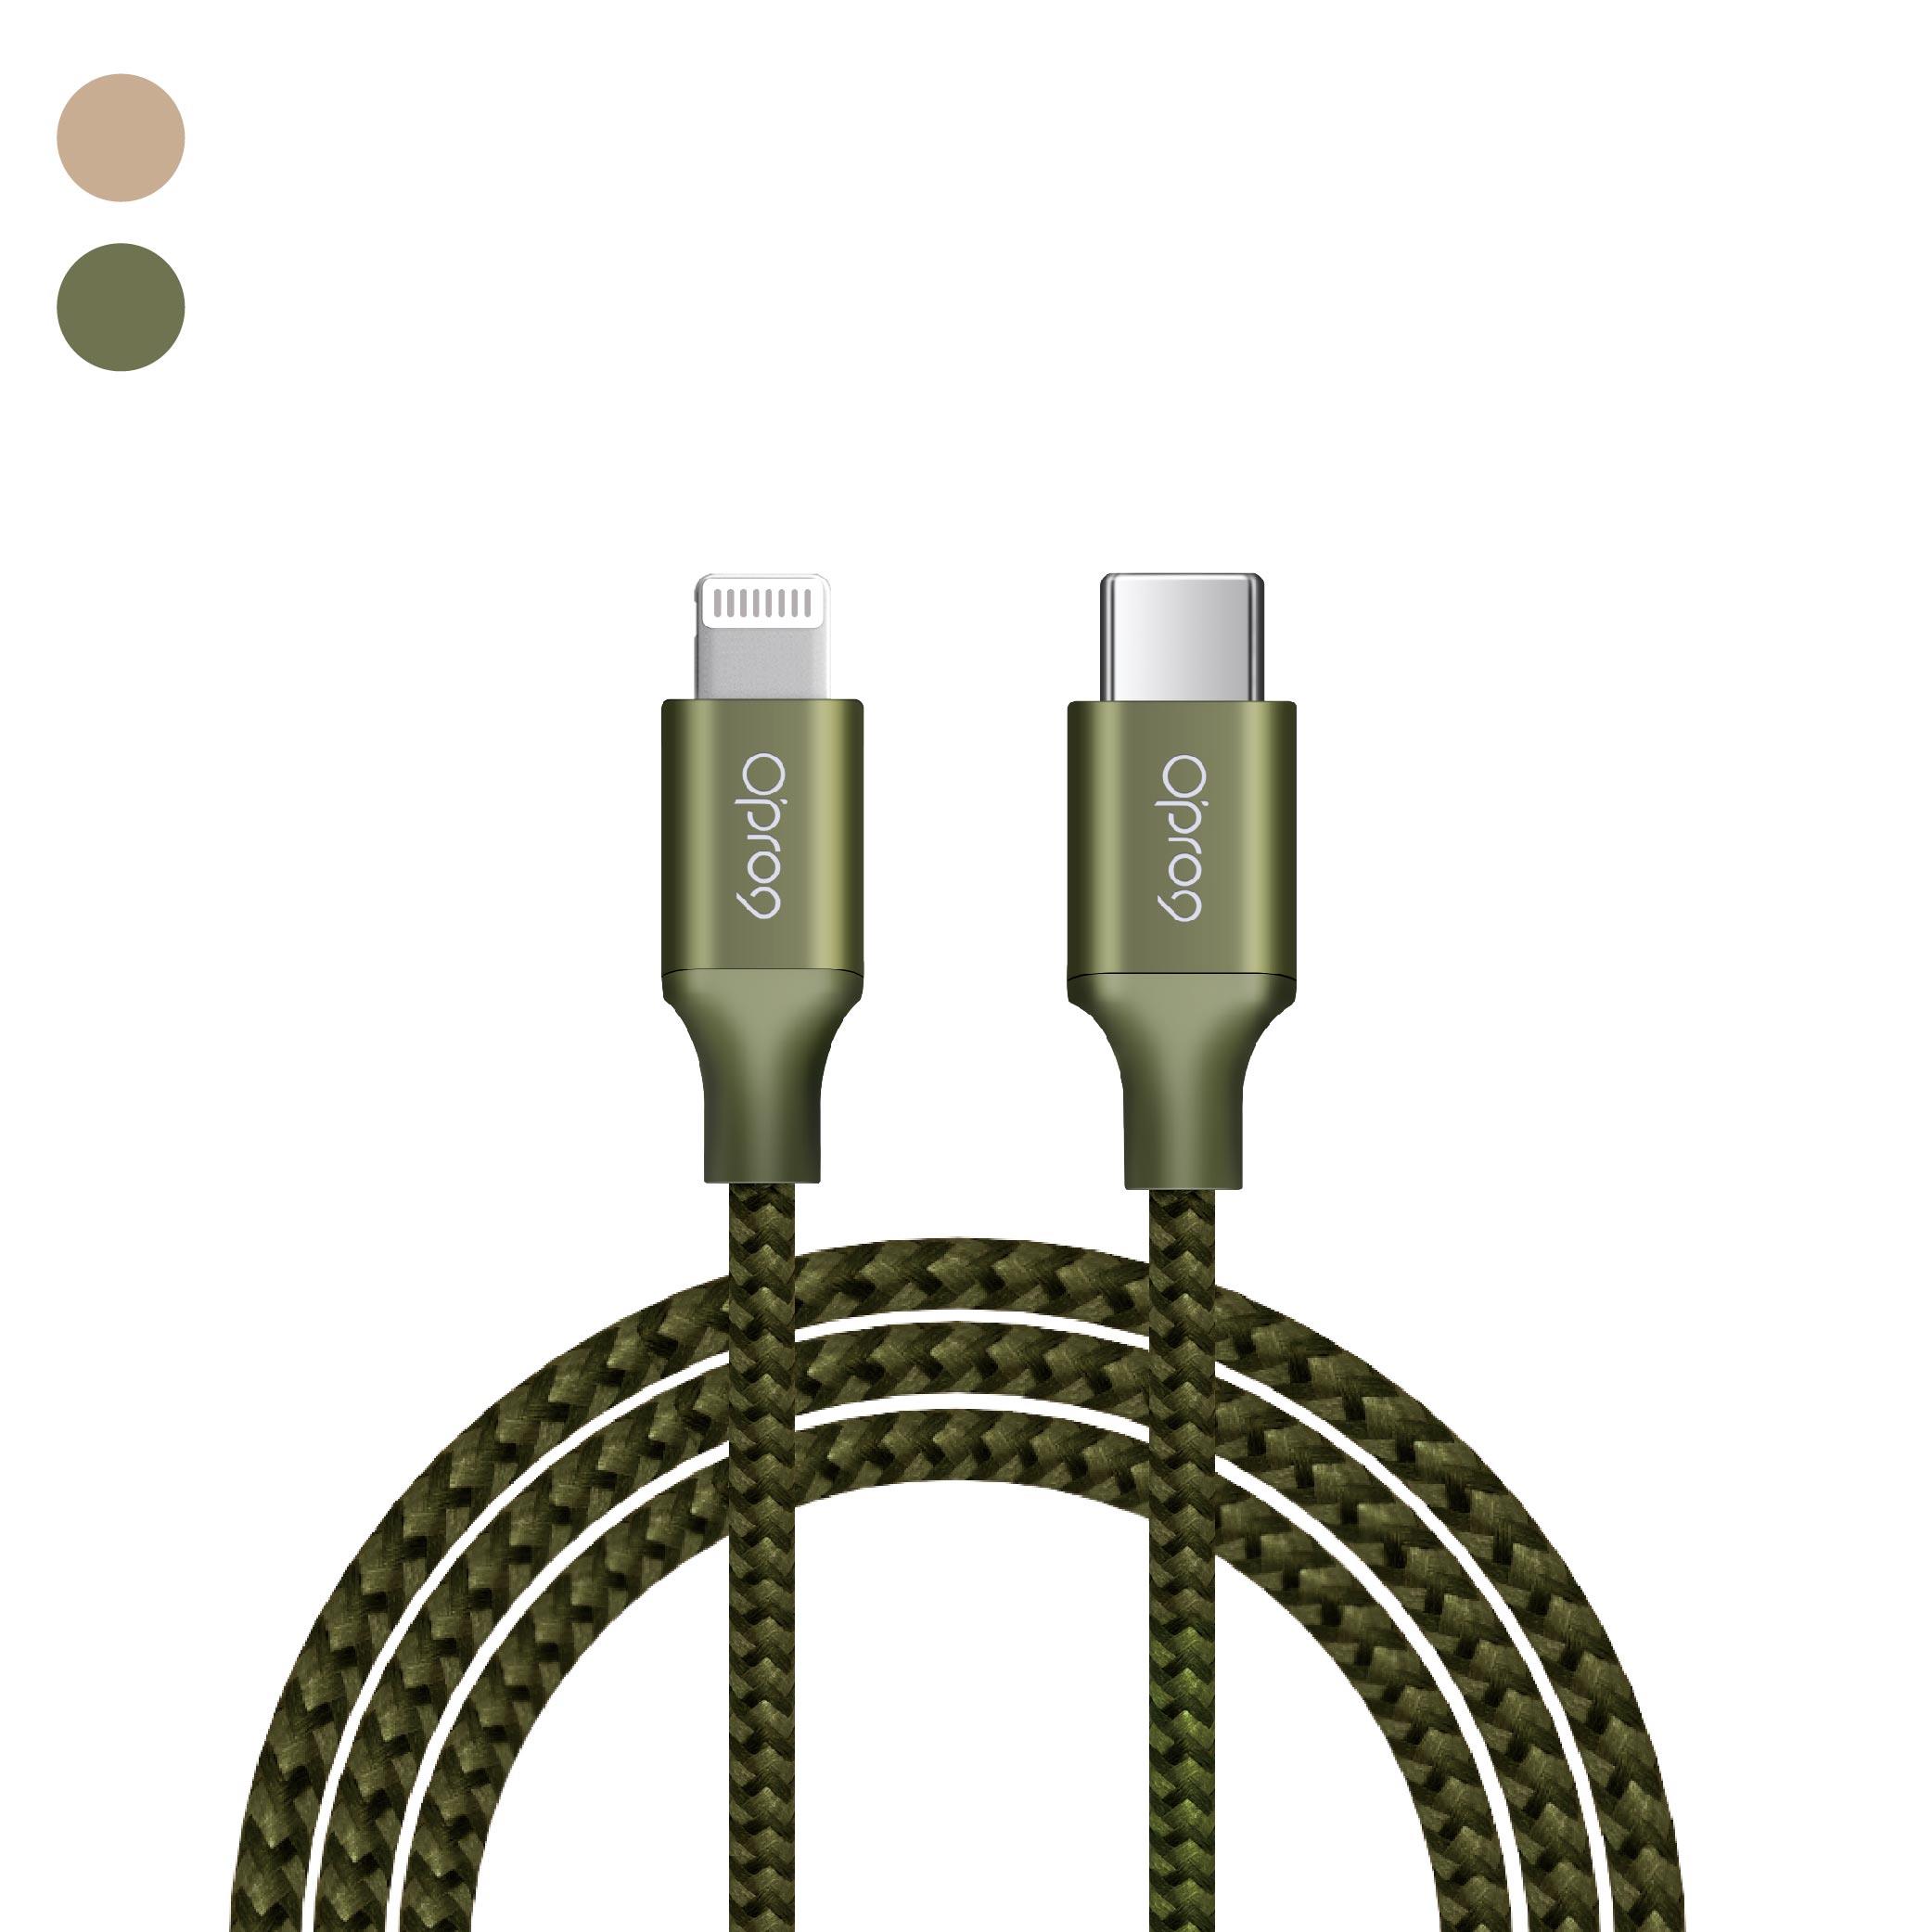 【兩入組】Opro9 蘋果原廠MFi認証 USB-C to Lightning 編織數據線 2M